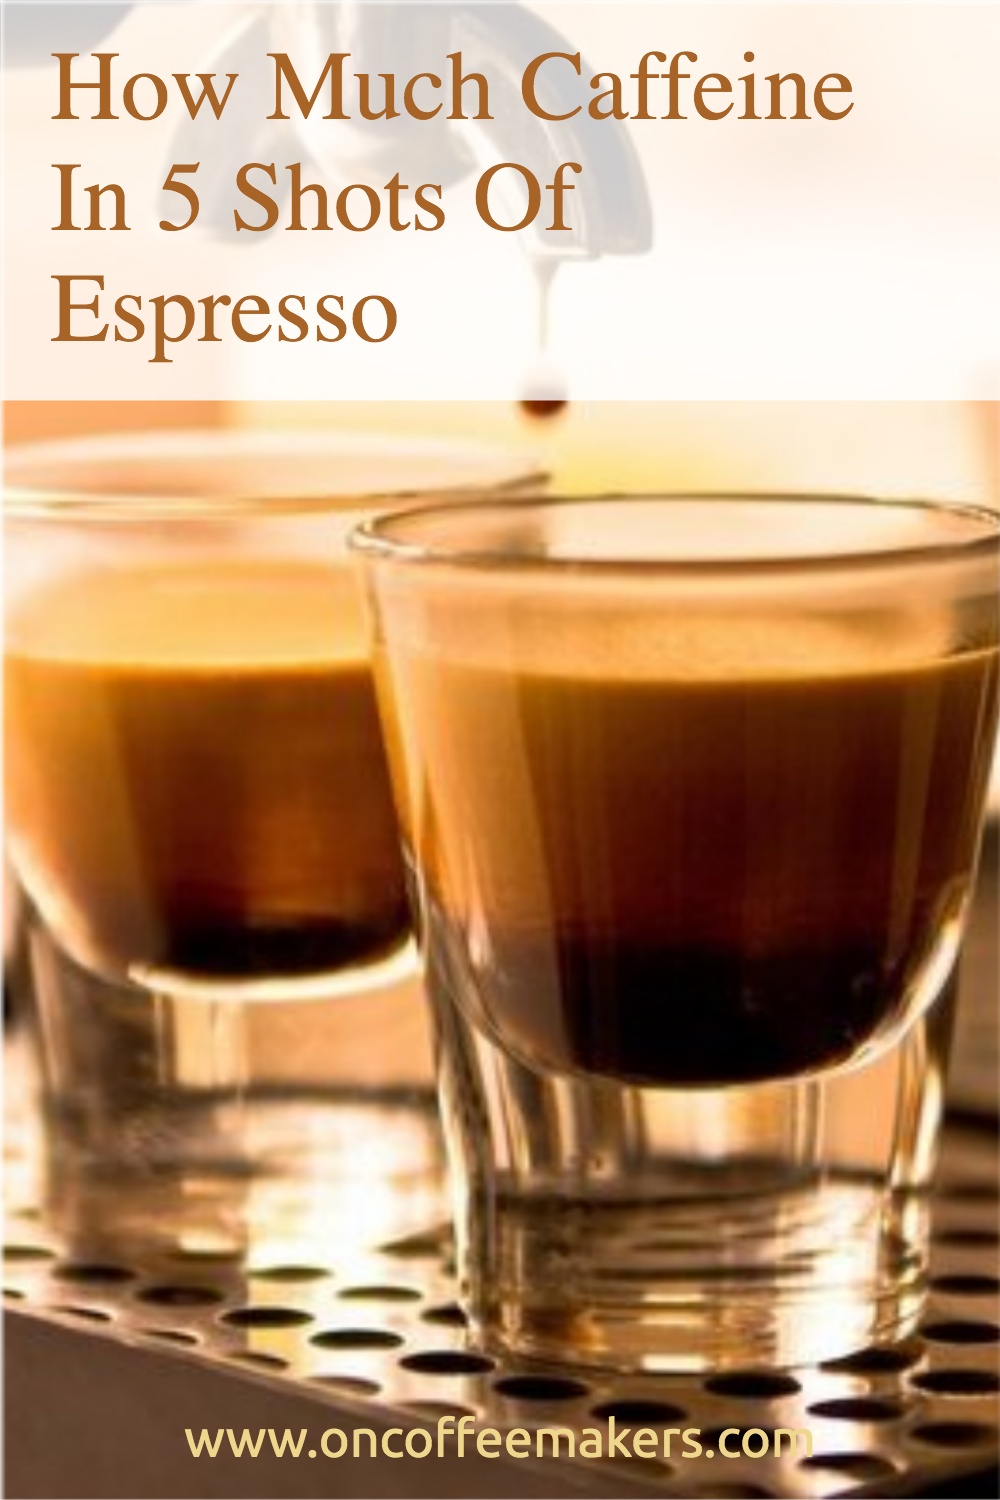 How-Much-Caffeine-In-5-Shots-Of-Espresso.jpg